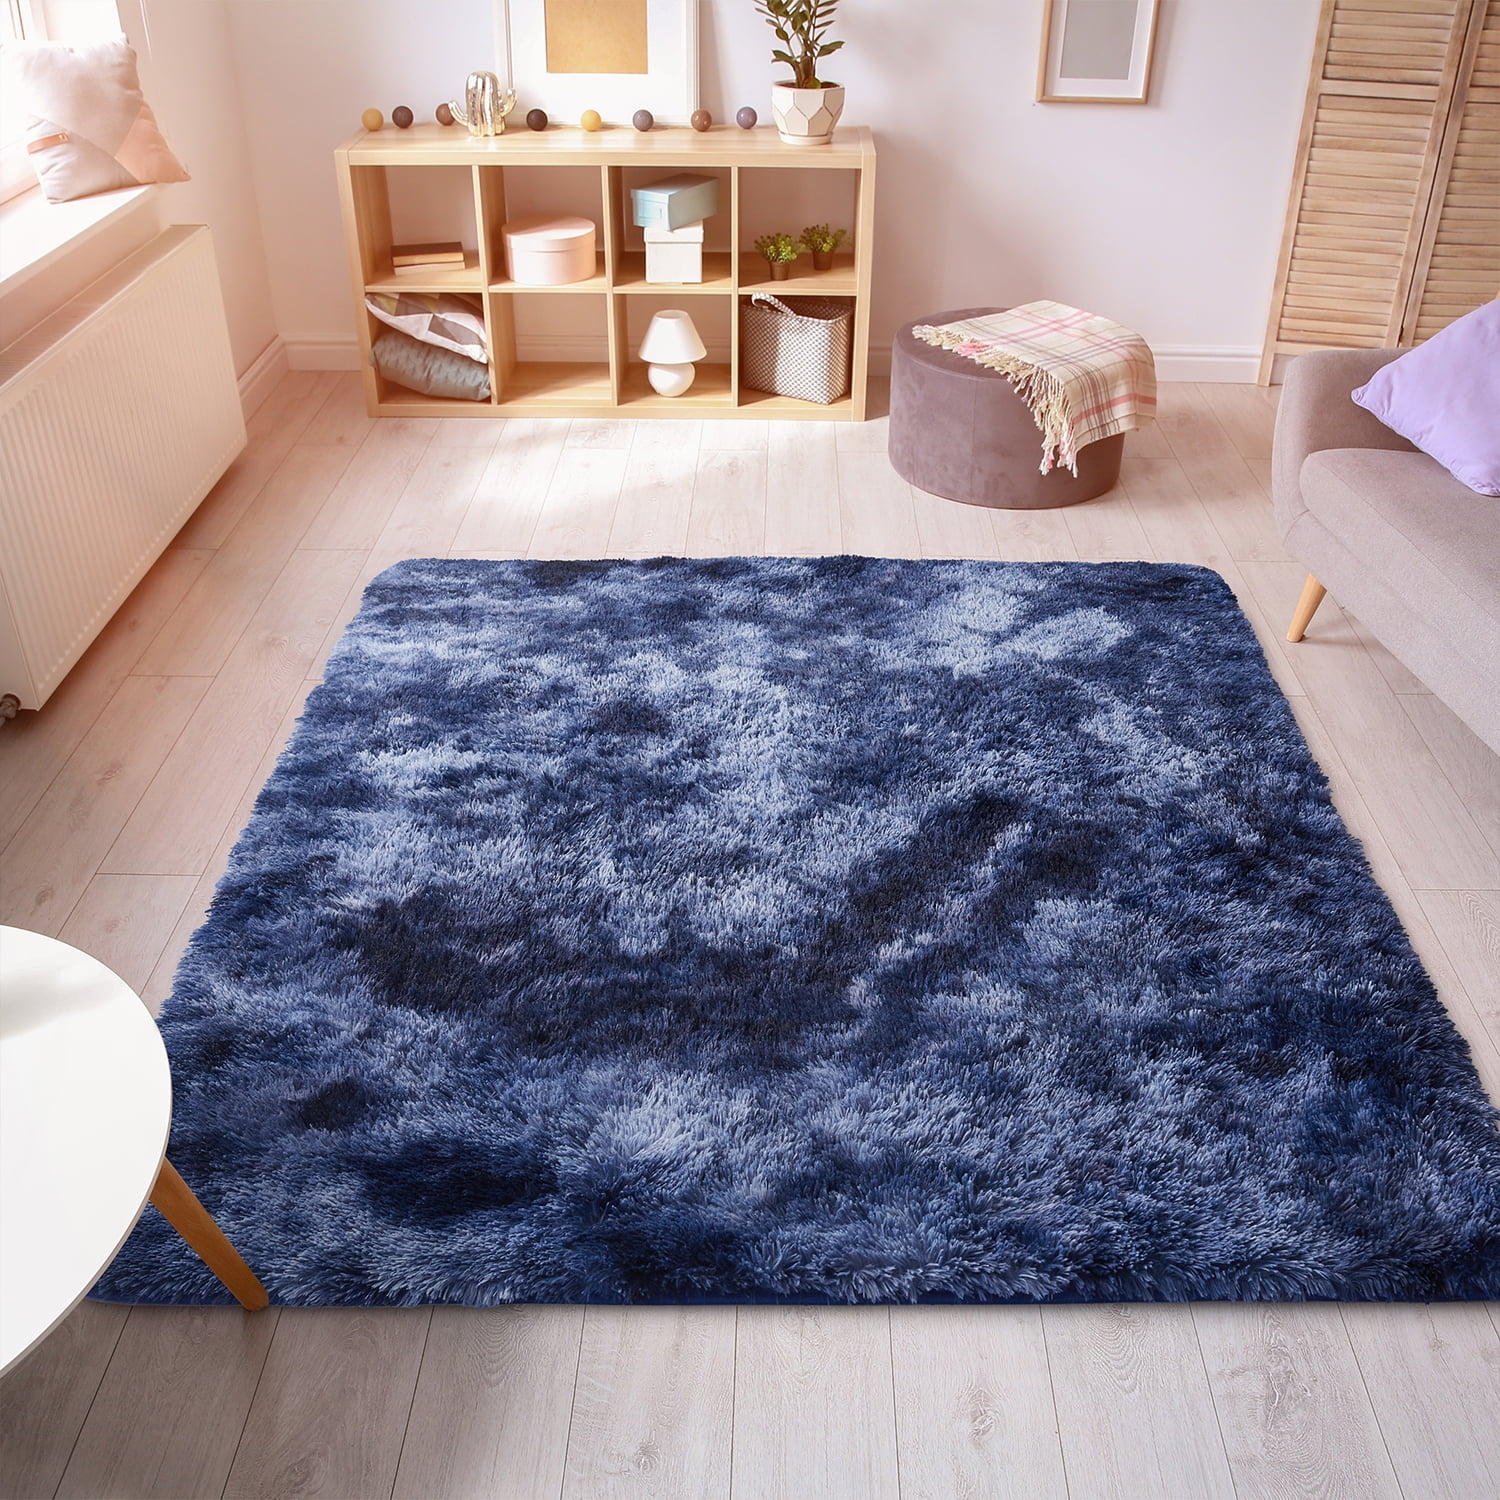 Avengers Square Carpet Floor Mat Home Decorate Area Rugs Carpet Multi-function